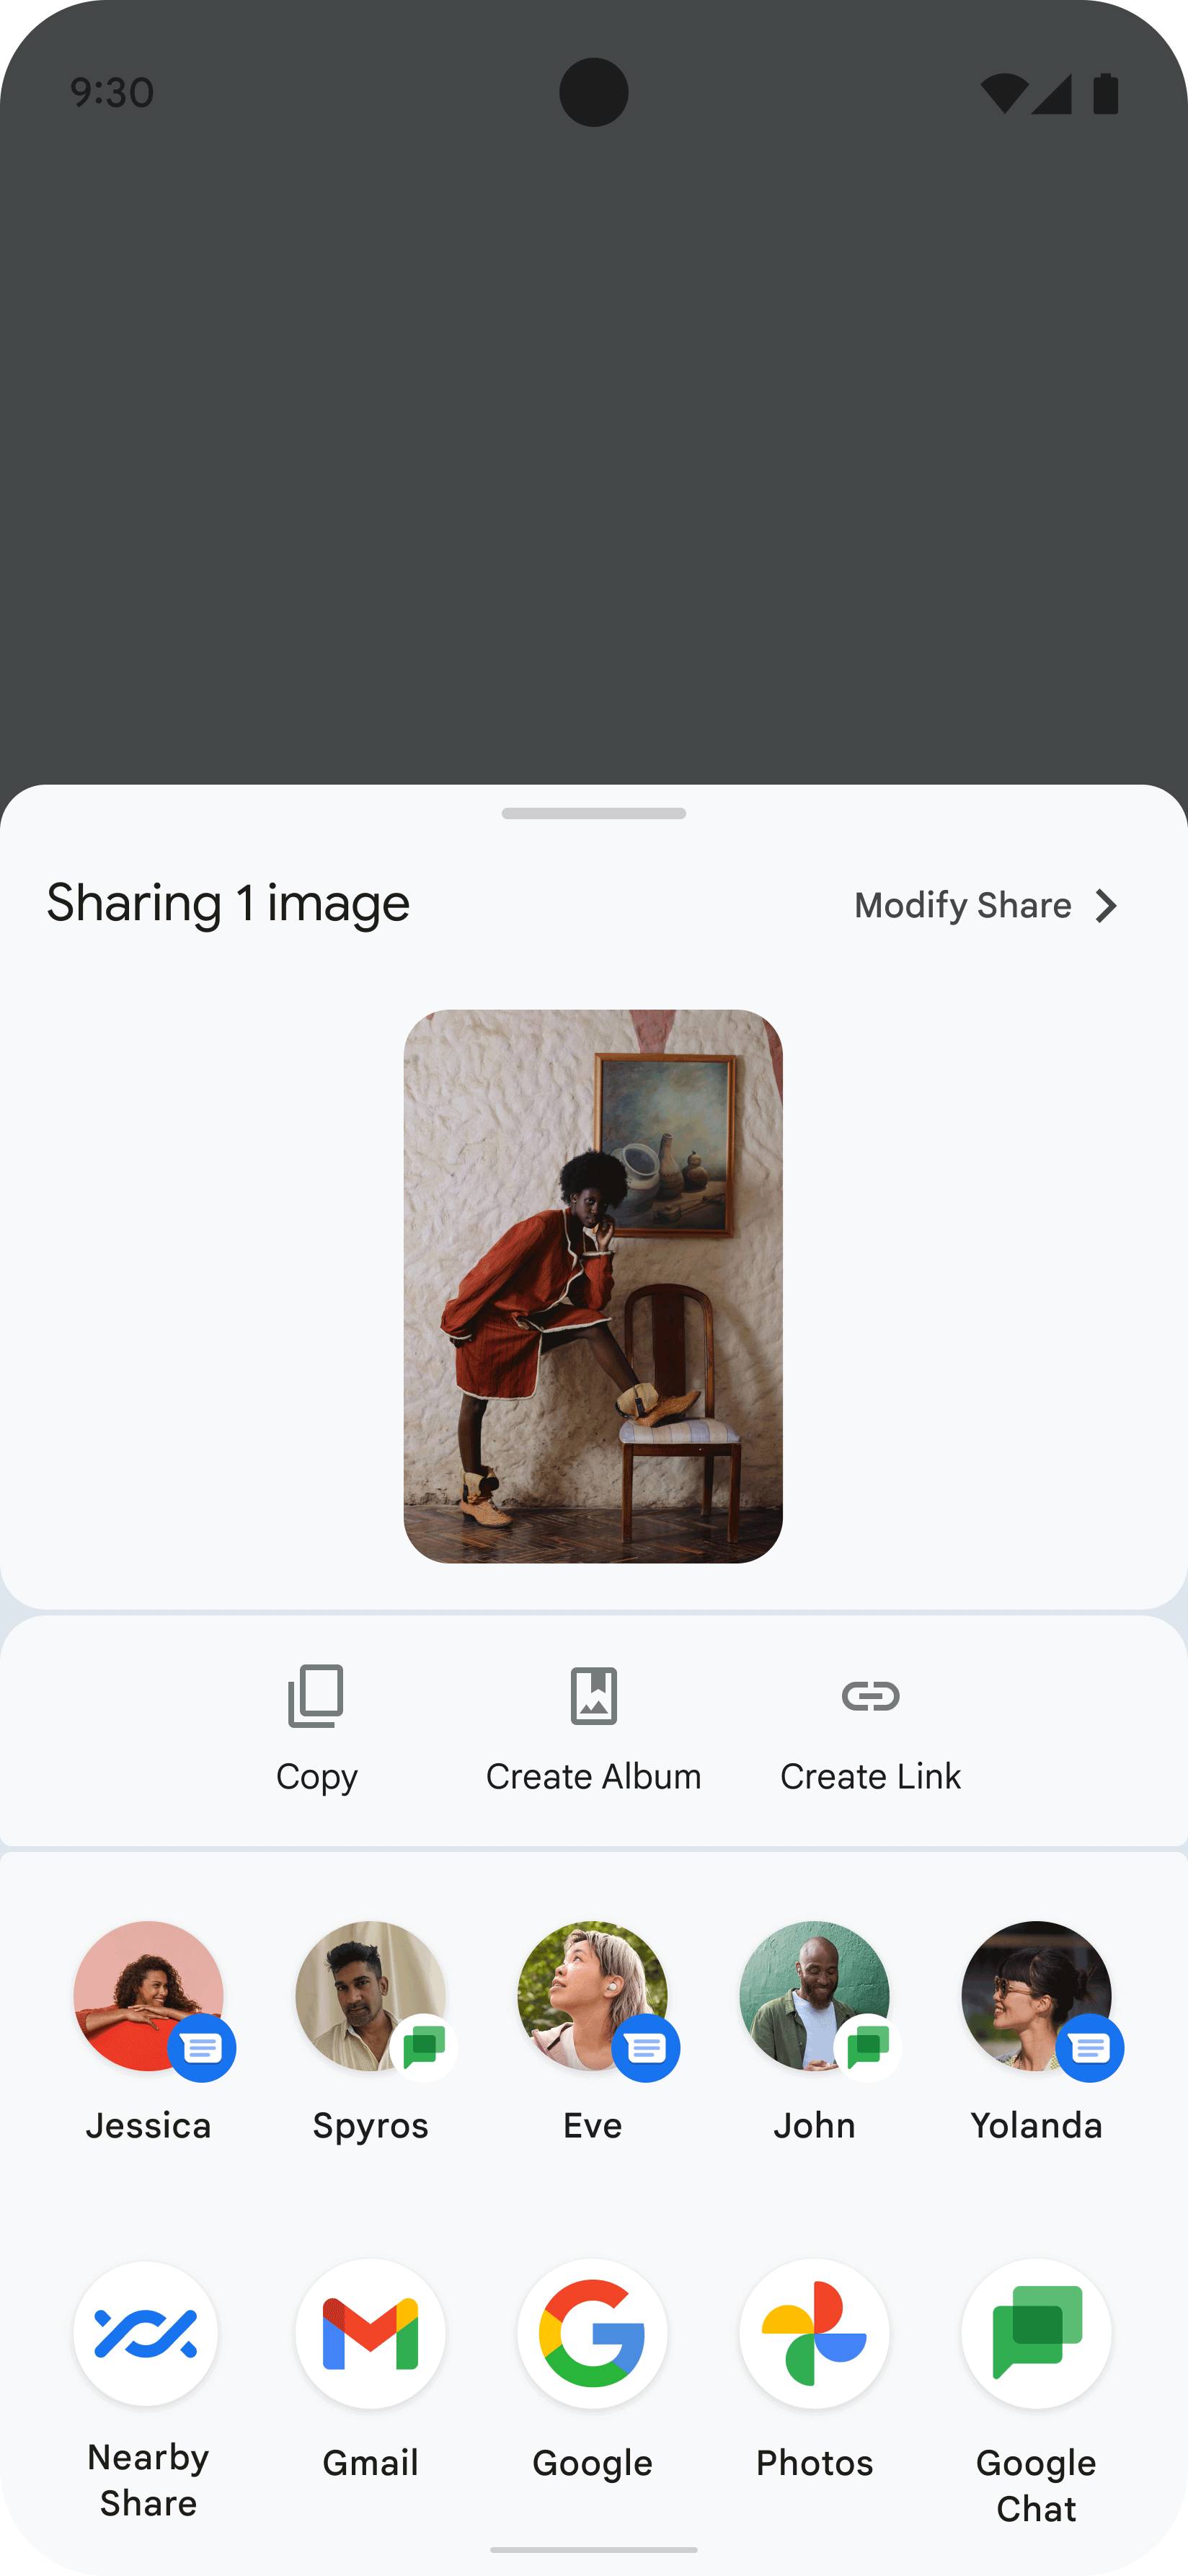 Esta imagem mostra o Sharesheet exibido em um app, resultado do usuário
  compartilhando a imagem de uma pessoa. O Sharesheet exibe vários ícones
  representando possíveis contatos e apps para compartilhar a imagem.